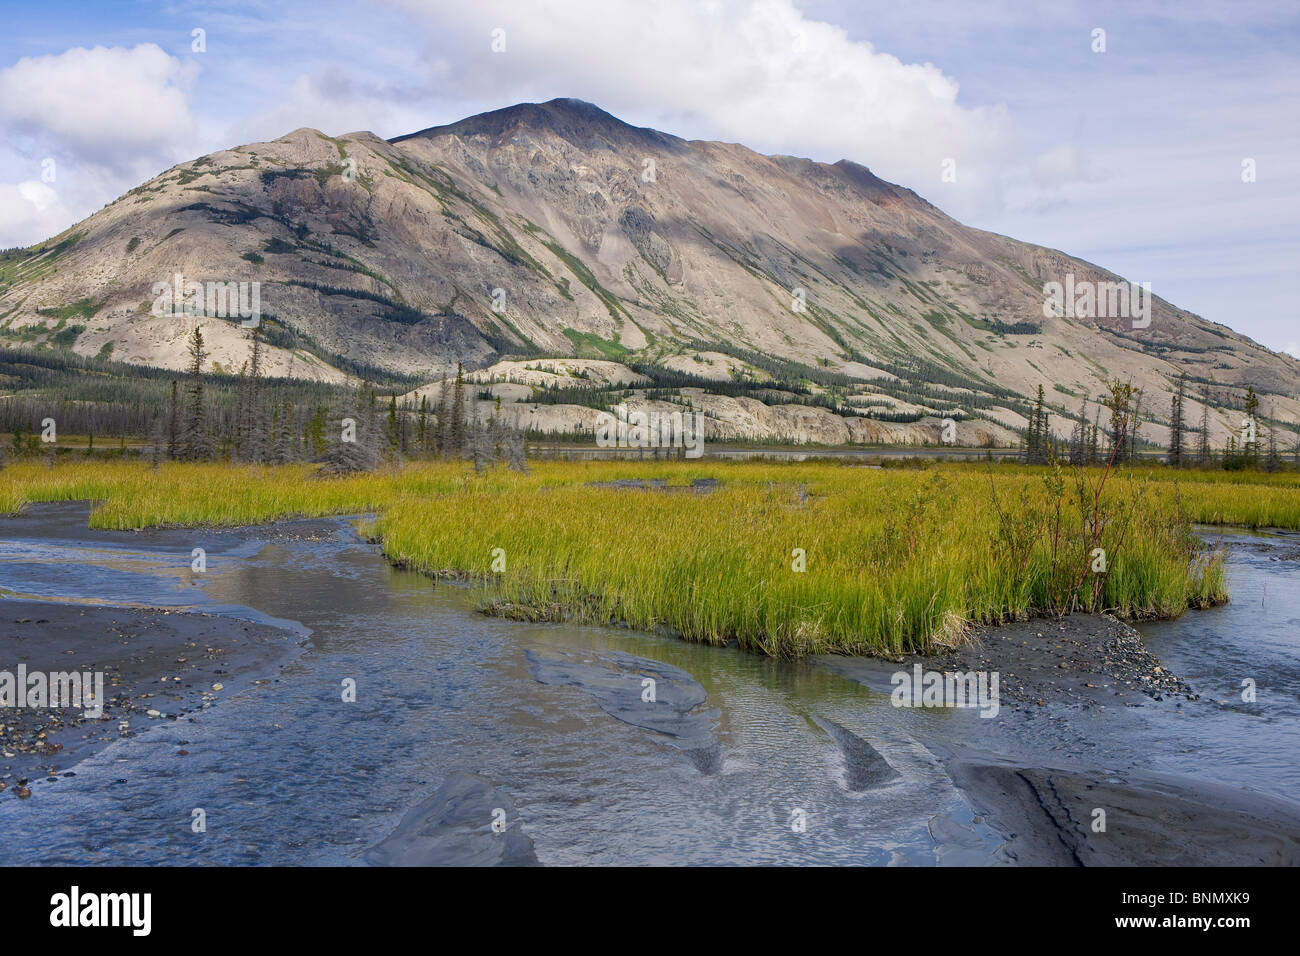 La vallée pittoresque de la rivière Slims et Sheep Mountain, parc national Kluane, Yukon, Canada. Banque D'Images